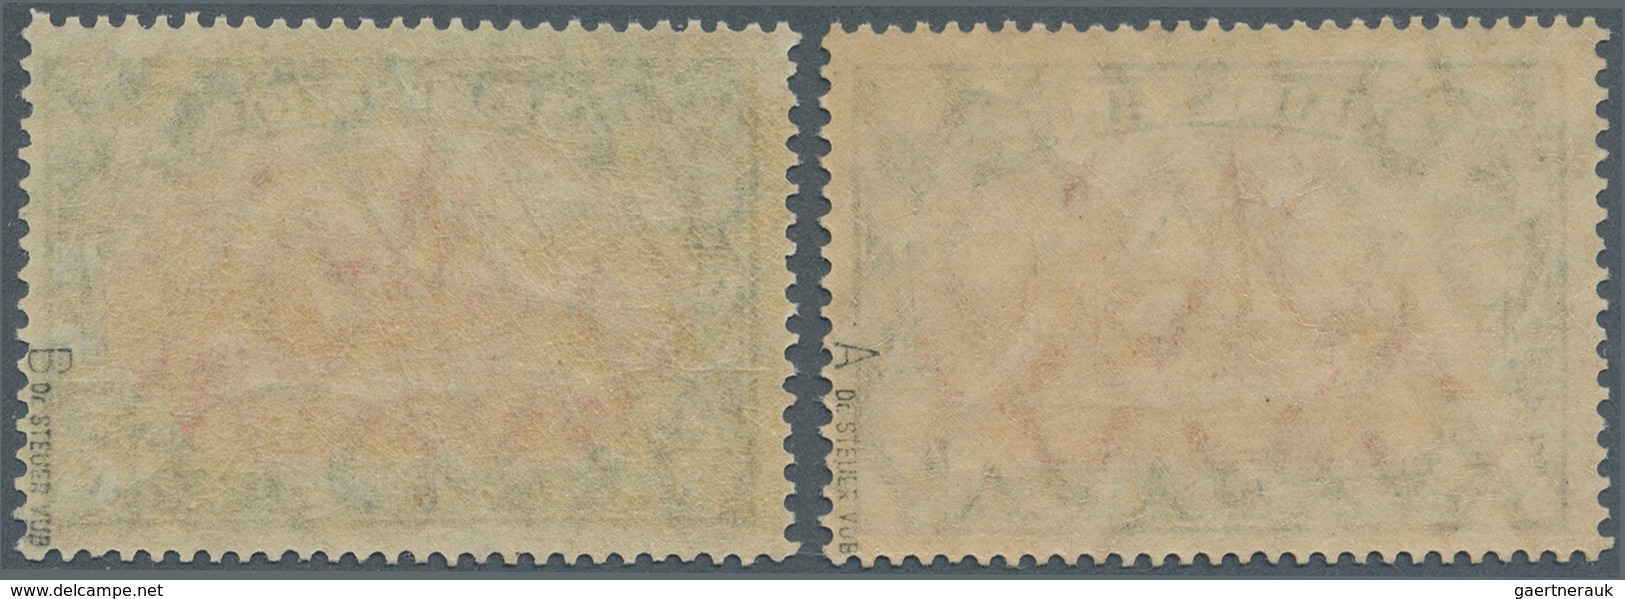 Deutsche Kolonien - Kiautschou: 1919, $ 2 1/2 Kaiseryacht Mit Wasserzeichen, 1x Friedensdruck Mit Zä - Kiauchau